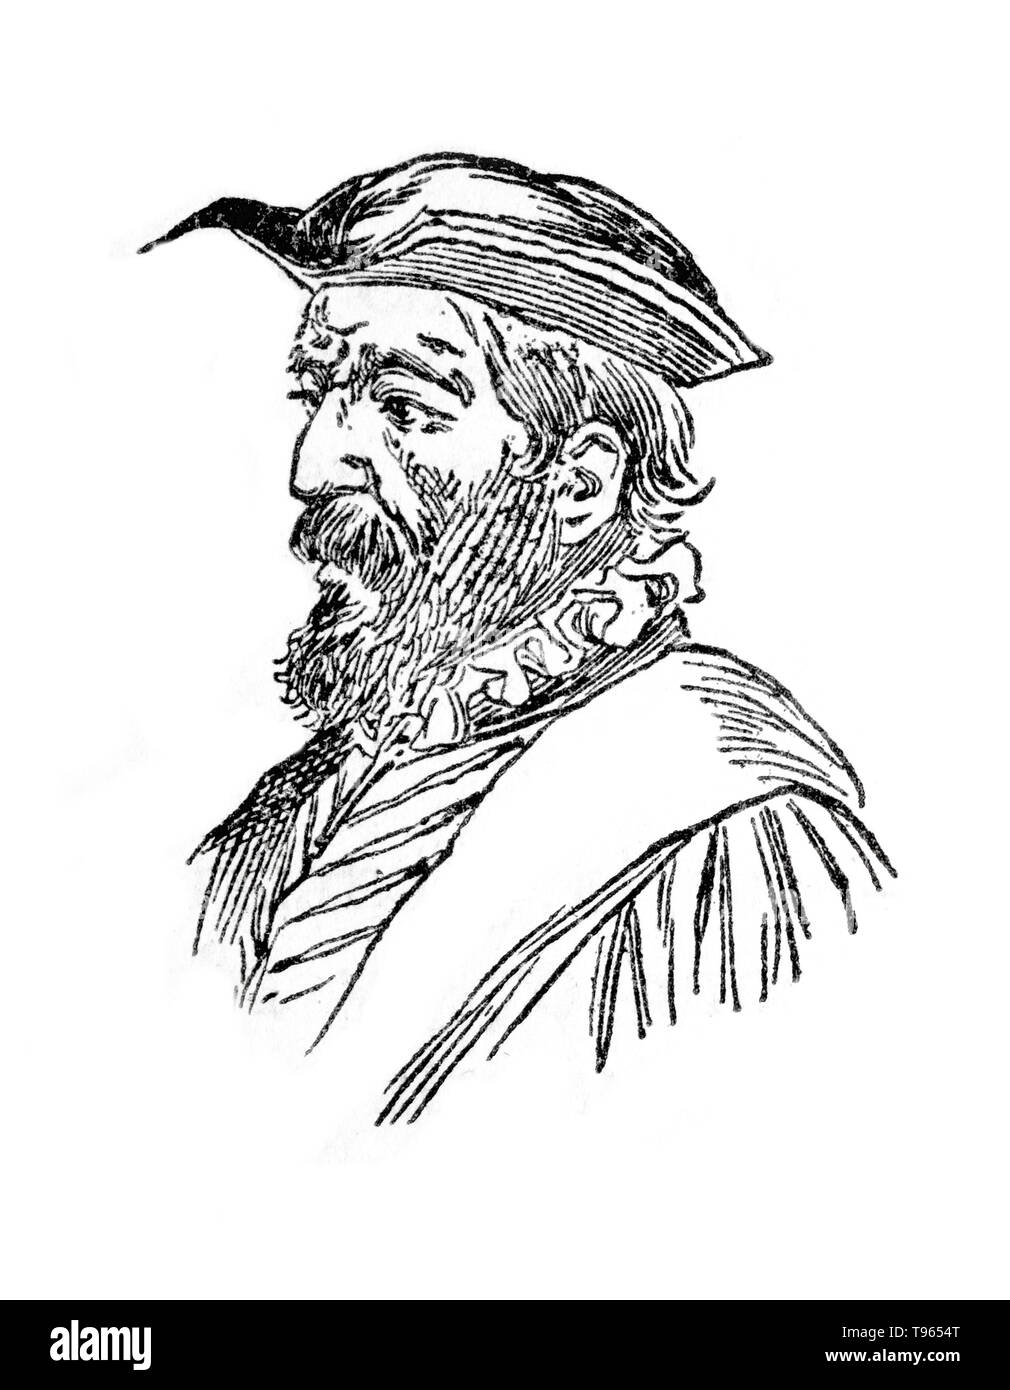 Retrato de Vicente Yanez Pinzon, constructor naval español y explorador. Dibujo del libro Enciclopedia Autodidactica publicado Foto de stock